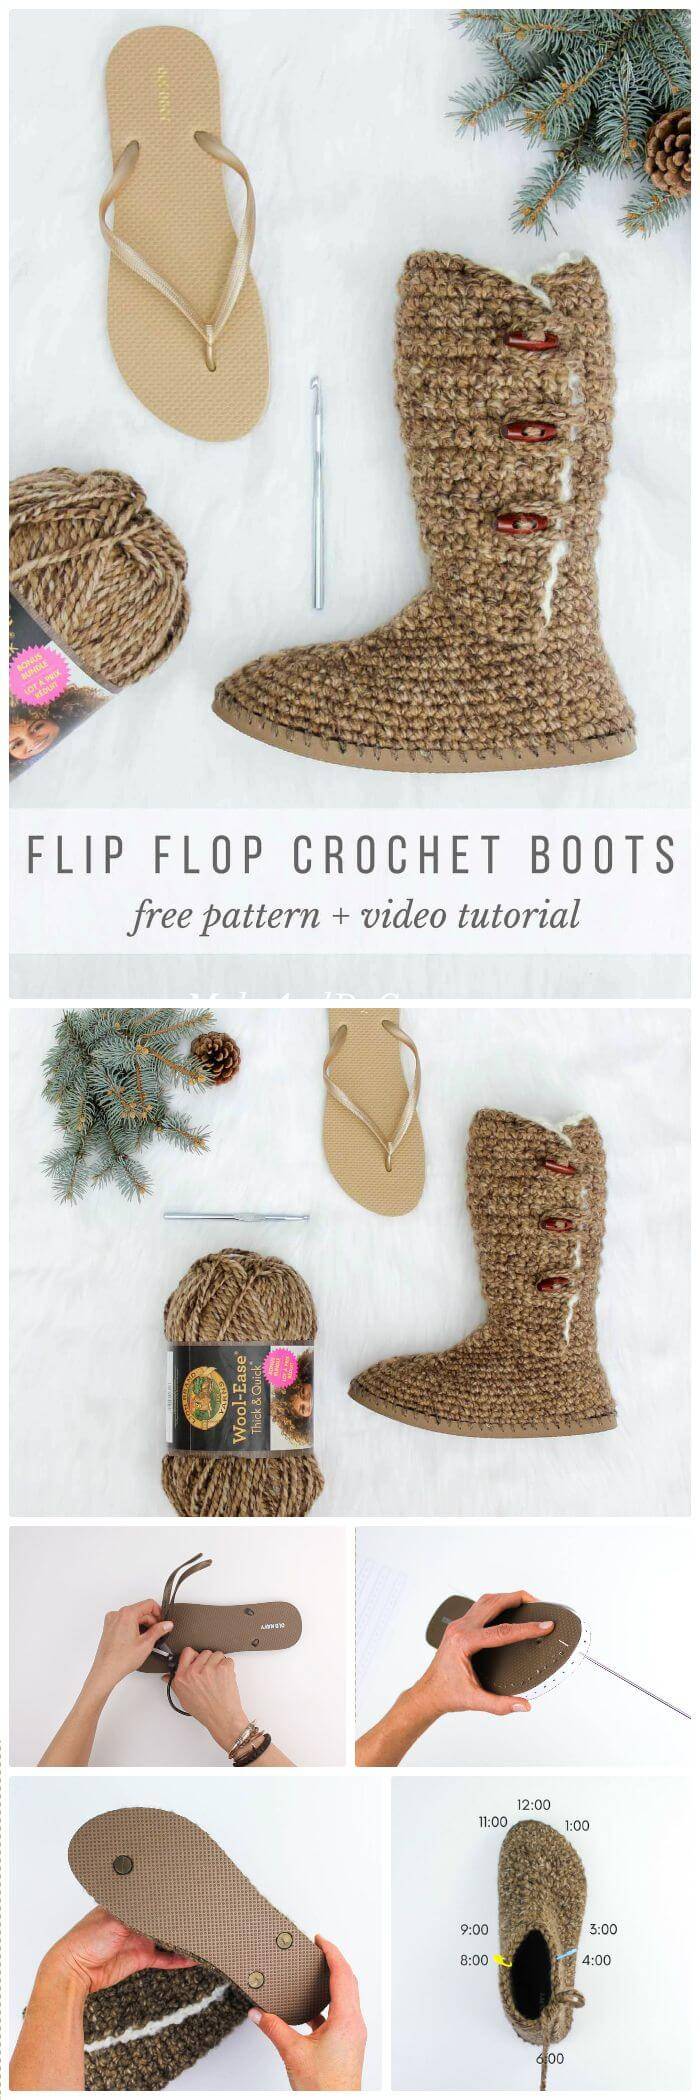 crochet boots from flip flops